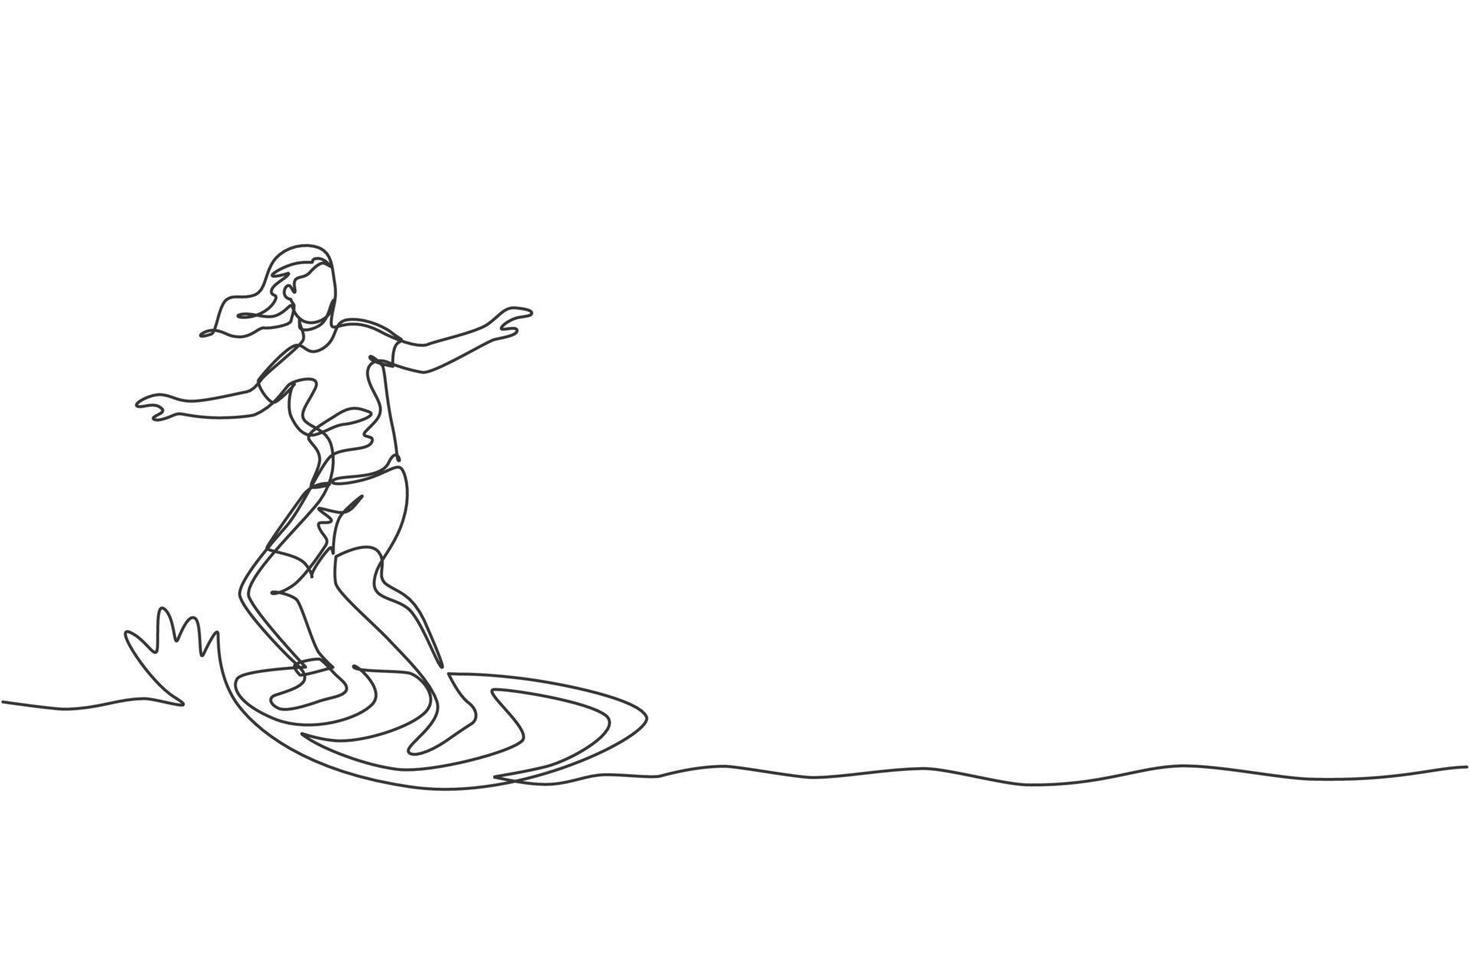 une ligne continue dessinant un jeune surfeur touristique heureux exerçant le surf sur l'océan ondulé. concept de sports nautiques extrêmes sains. vacances d'été. illustration graphique vectorielle de conception de dessin à une seule ligne dynamique vecteur